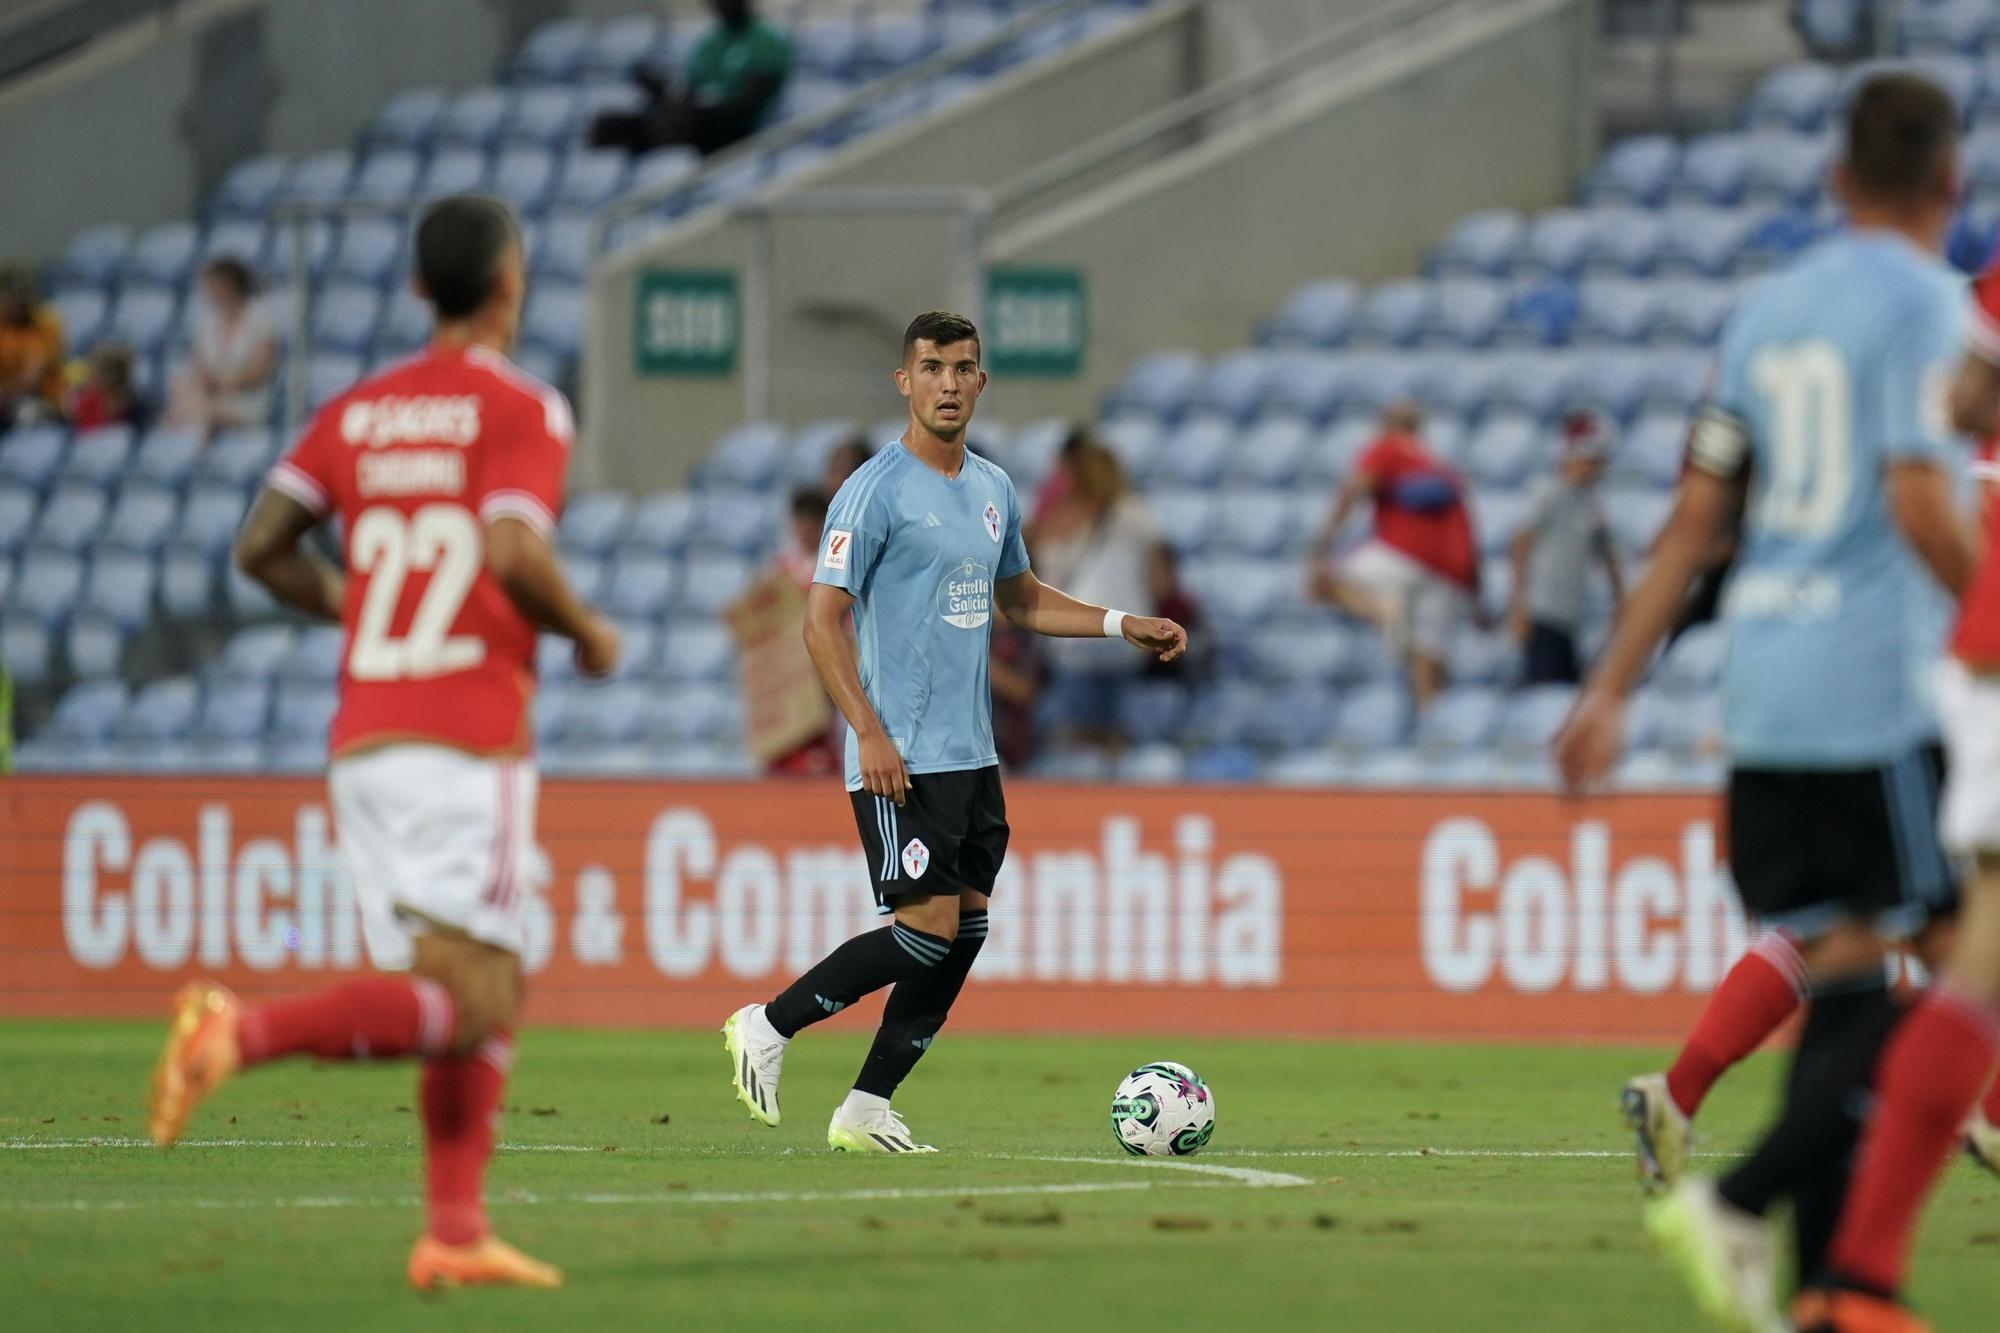 El Benfica-Celta jugado en el Algarve, en imágenes